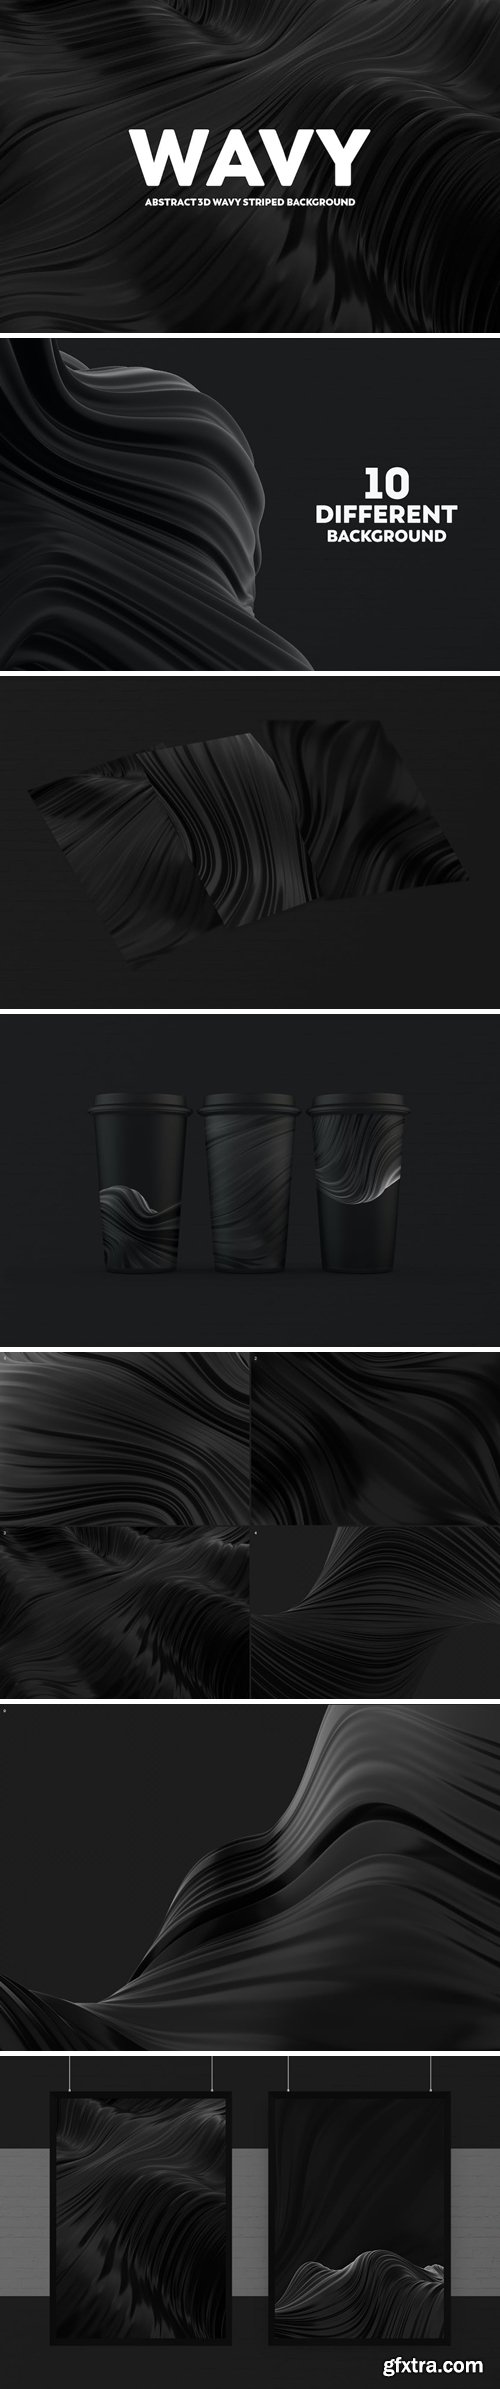 Abstract 3D Wavy Backgrounds - Black Color QZ6QPUL